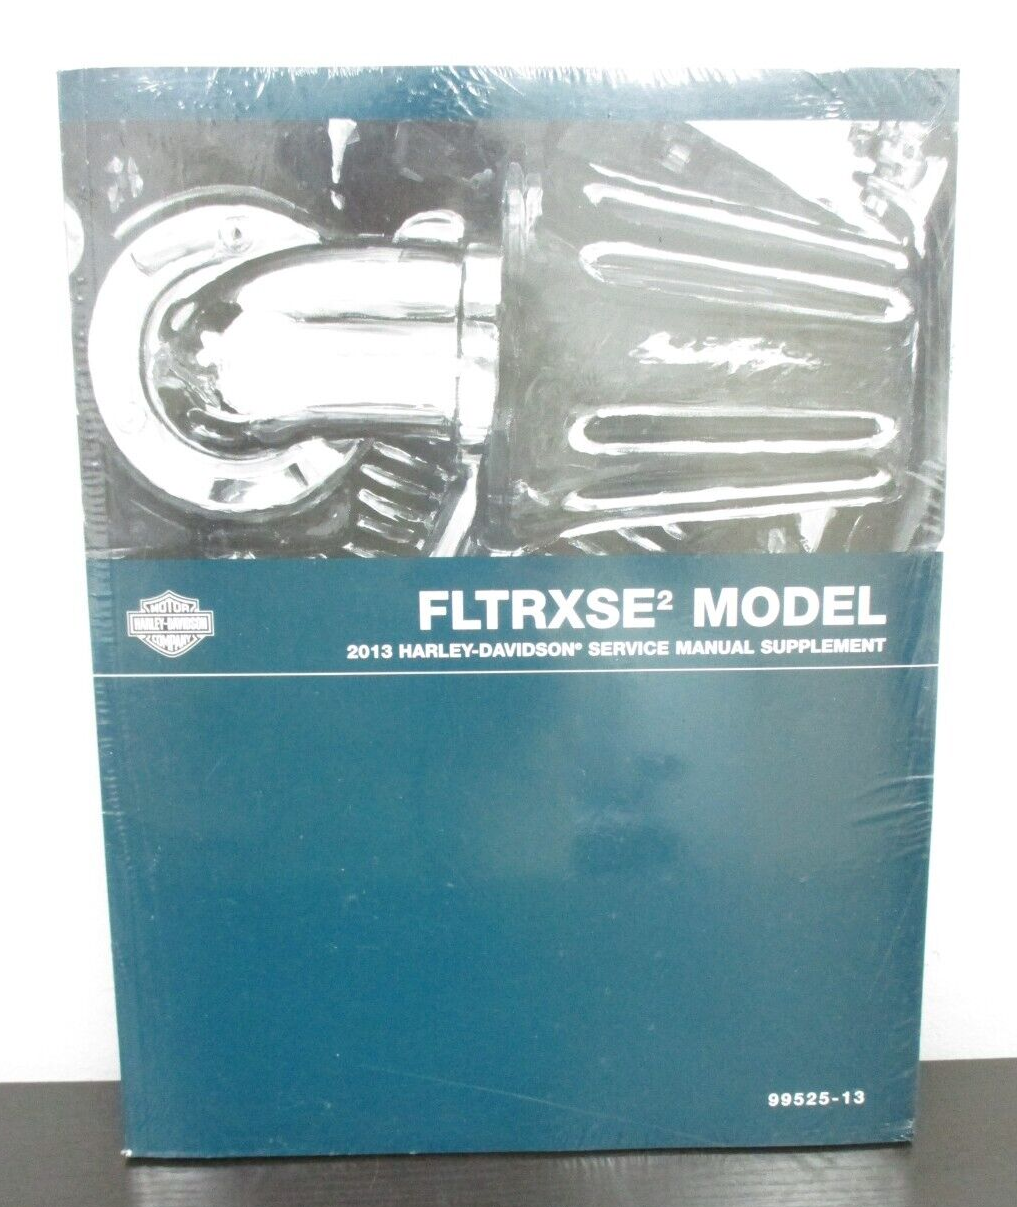 Harley-Davidson 2013 FLTRXSE2 Model Service Manual Supplement 99525-13